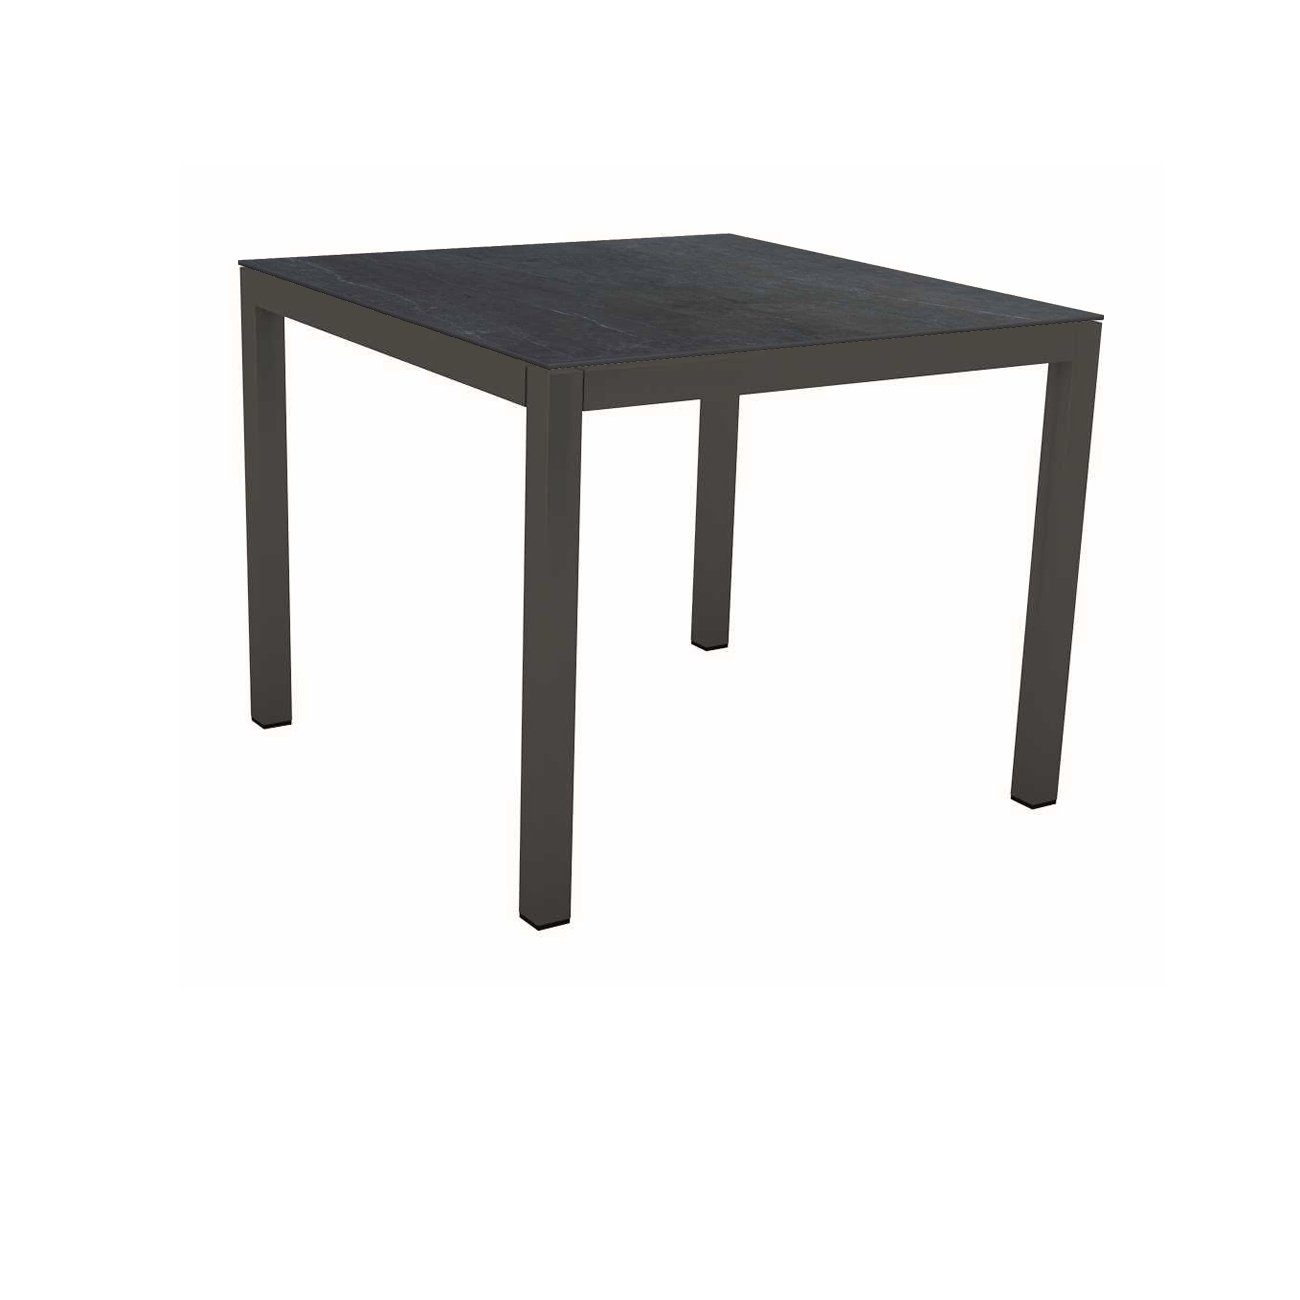 Stern Tischsystem, Gestell Aluminium anthrazit, Tischplatte Dekton Lava anthrazit, 90x90 cm